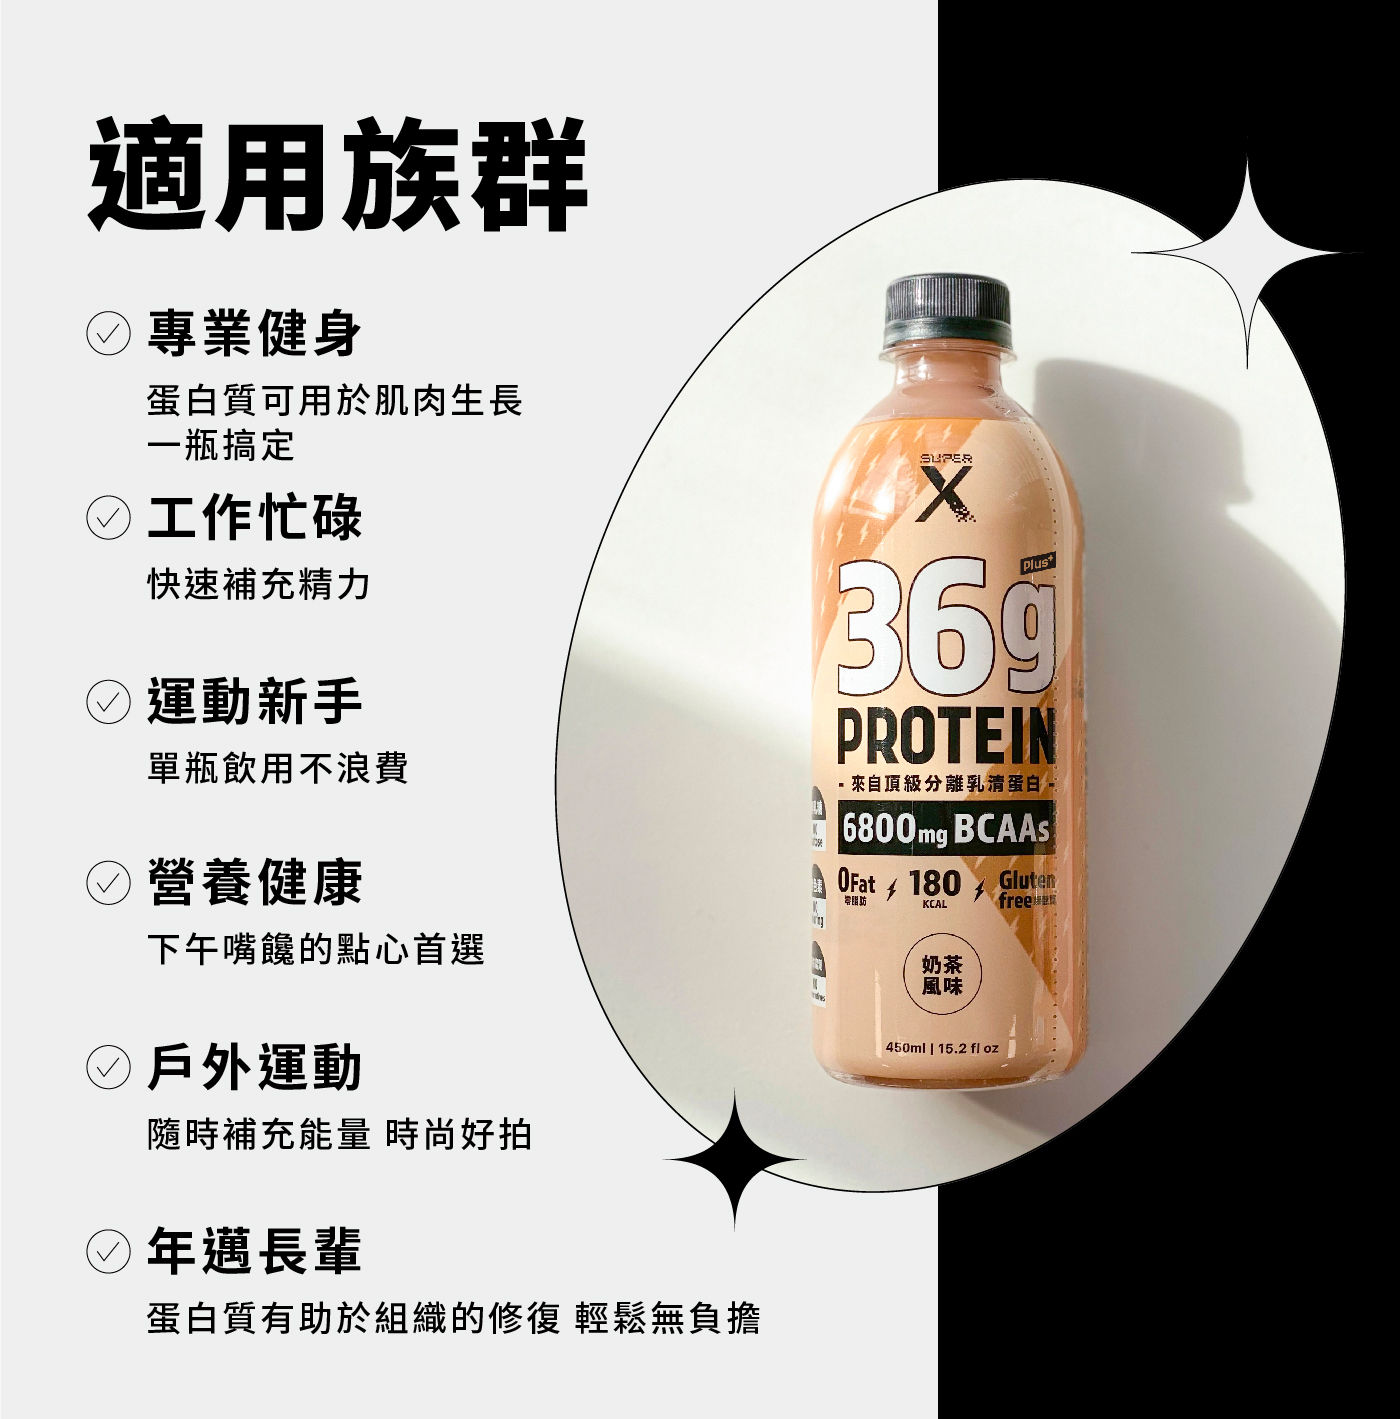 Super X 頂級分離乳清蛋白飲 Plus 奶茶風味 450毫升 X 24入